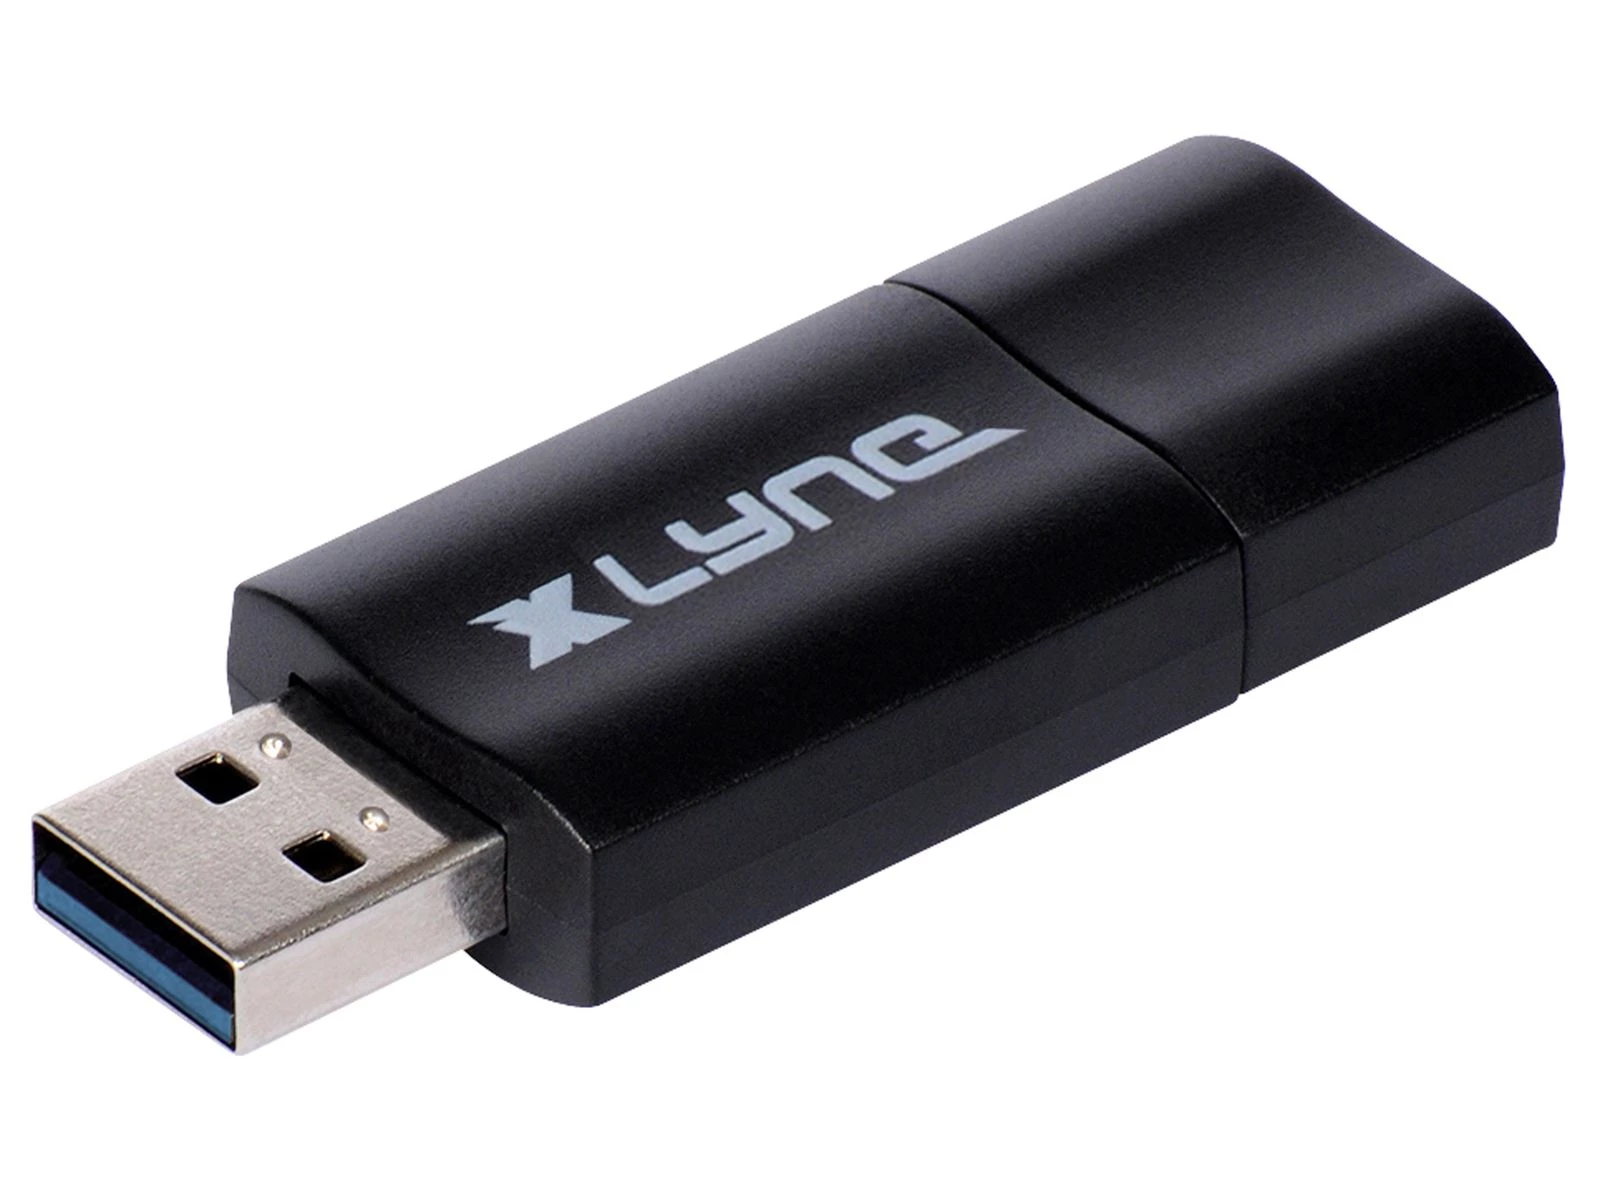 512 GB USB 3.0 Speicherstick - Xlyne